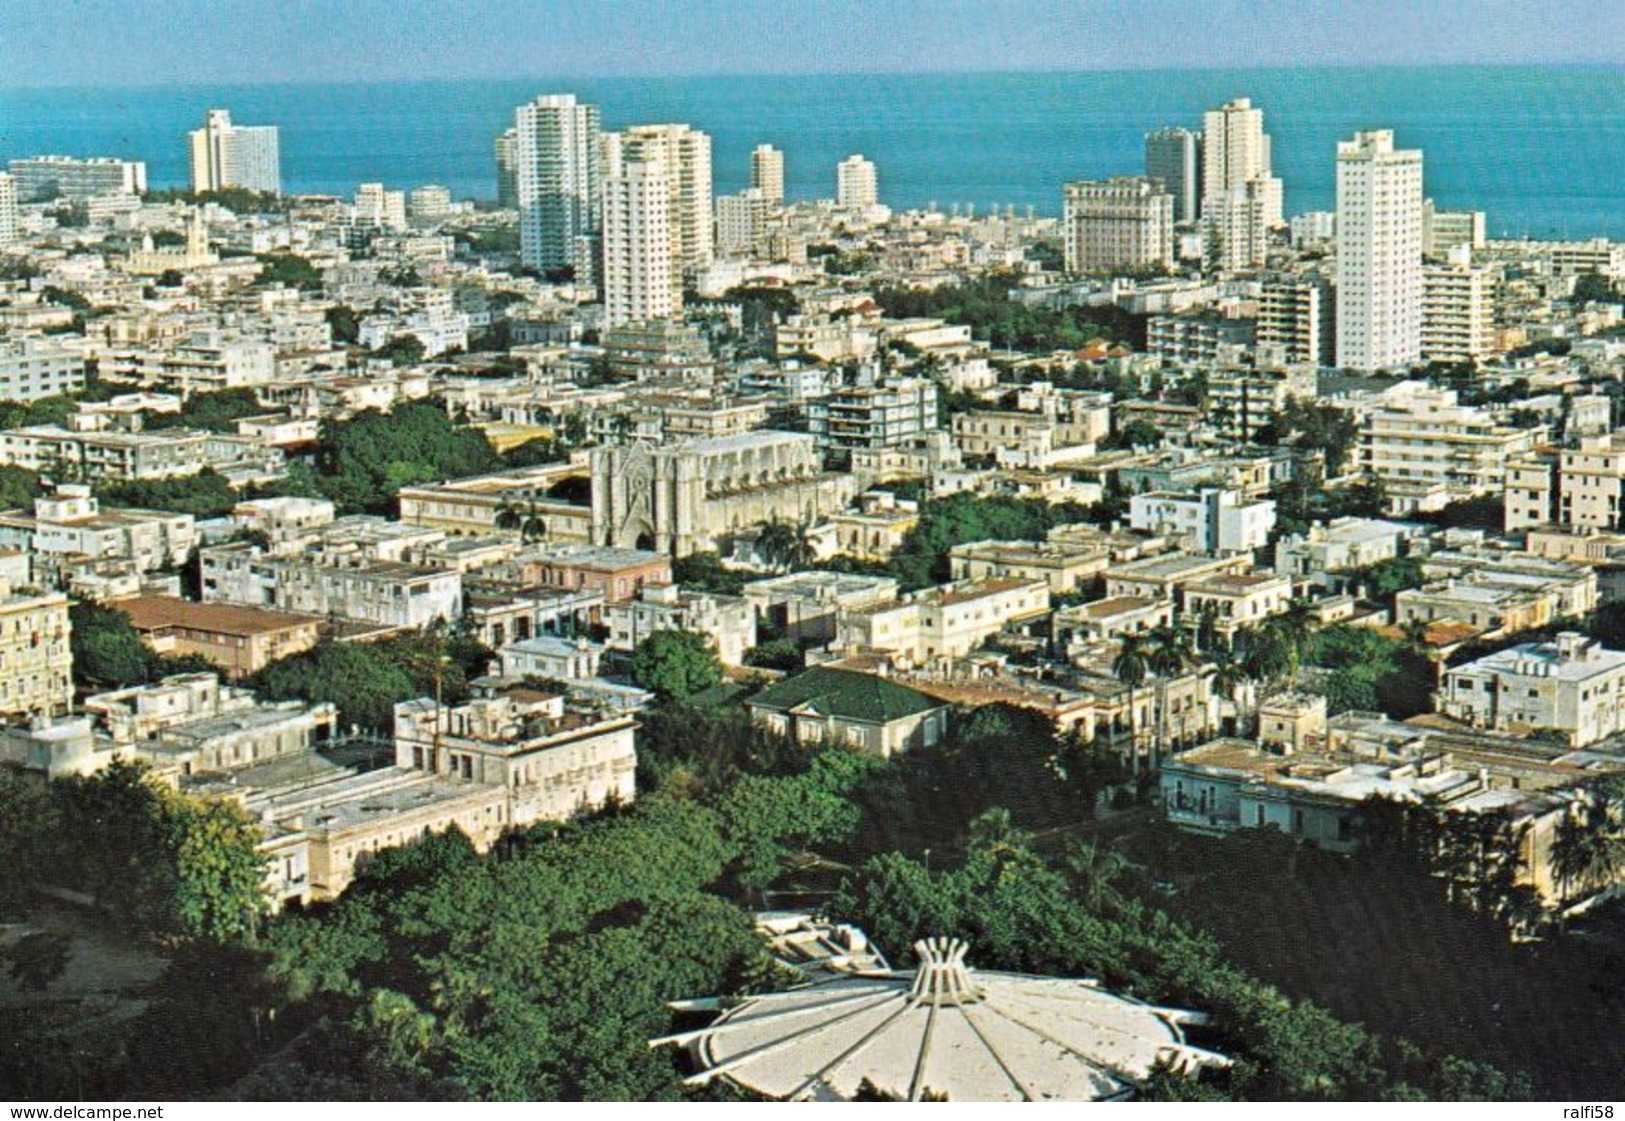 1 AK Kuba * Blick Auf Das Moderne Zentrum Der Hauptstadt Havanna - Luftbildaufnahme * - Kuba